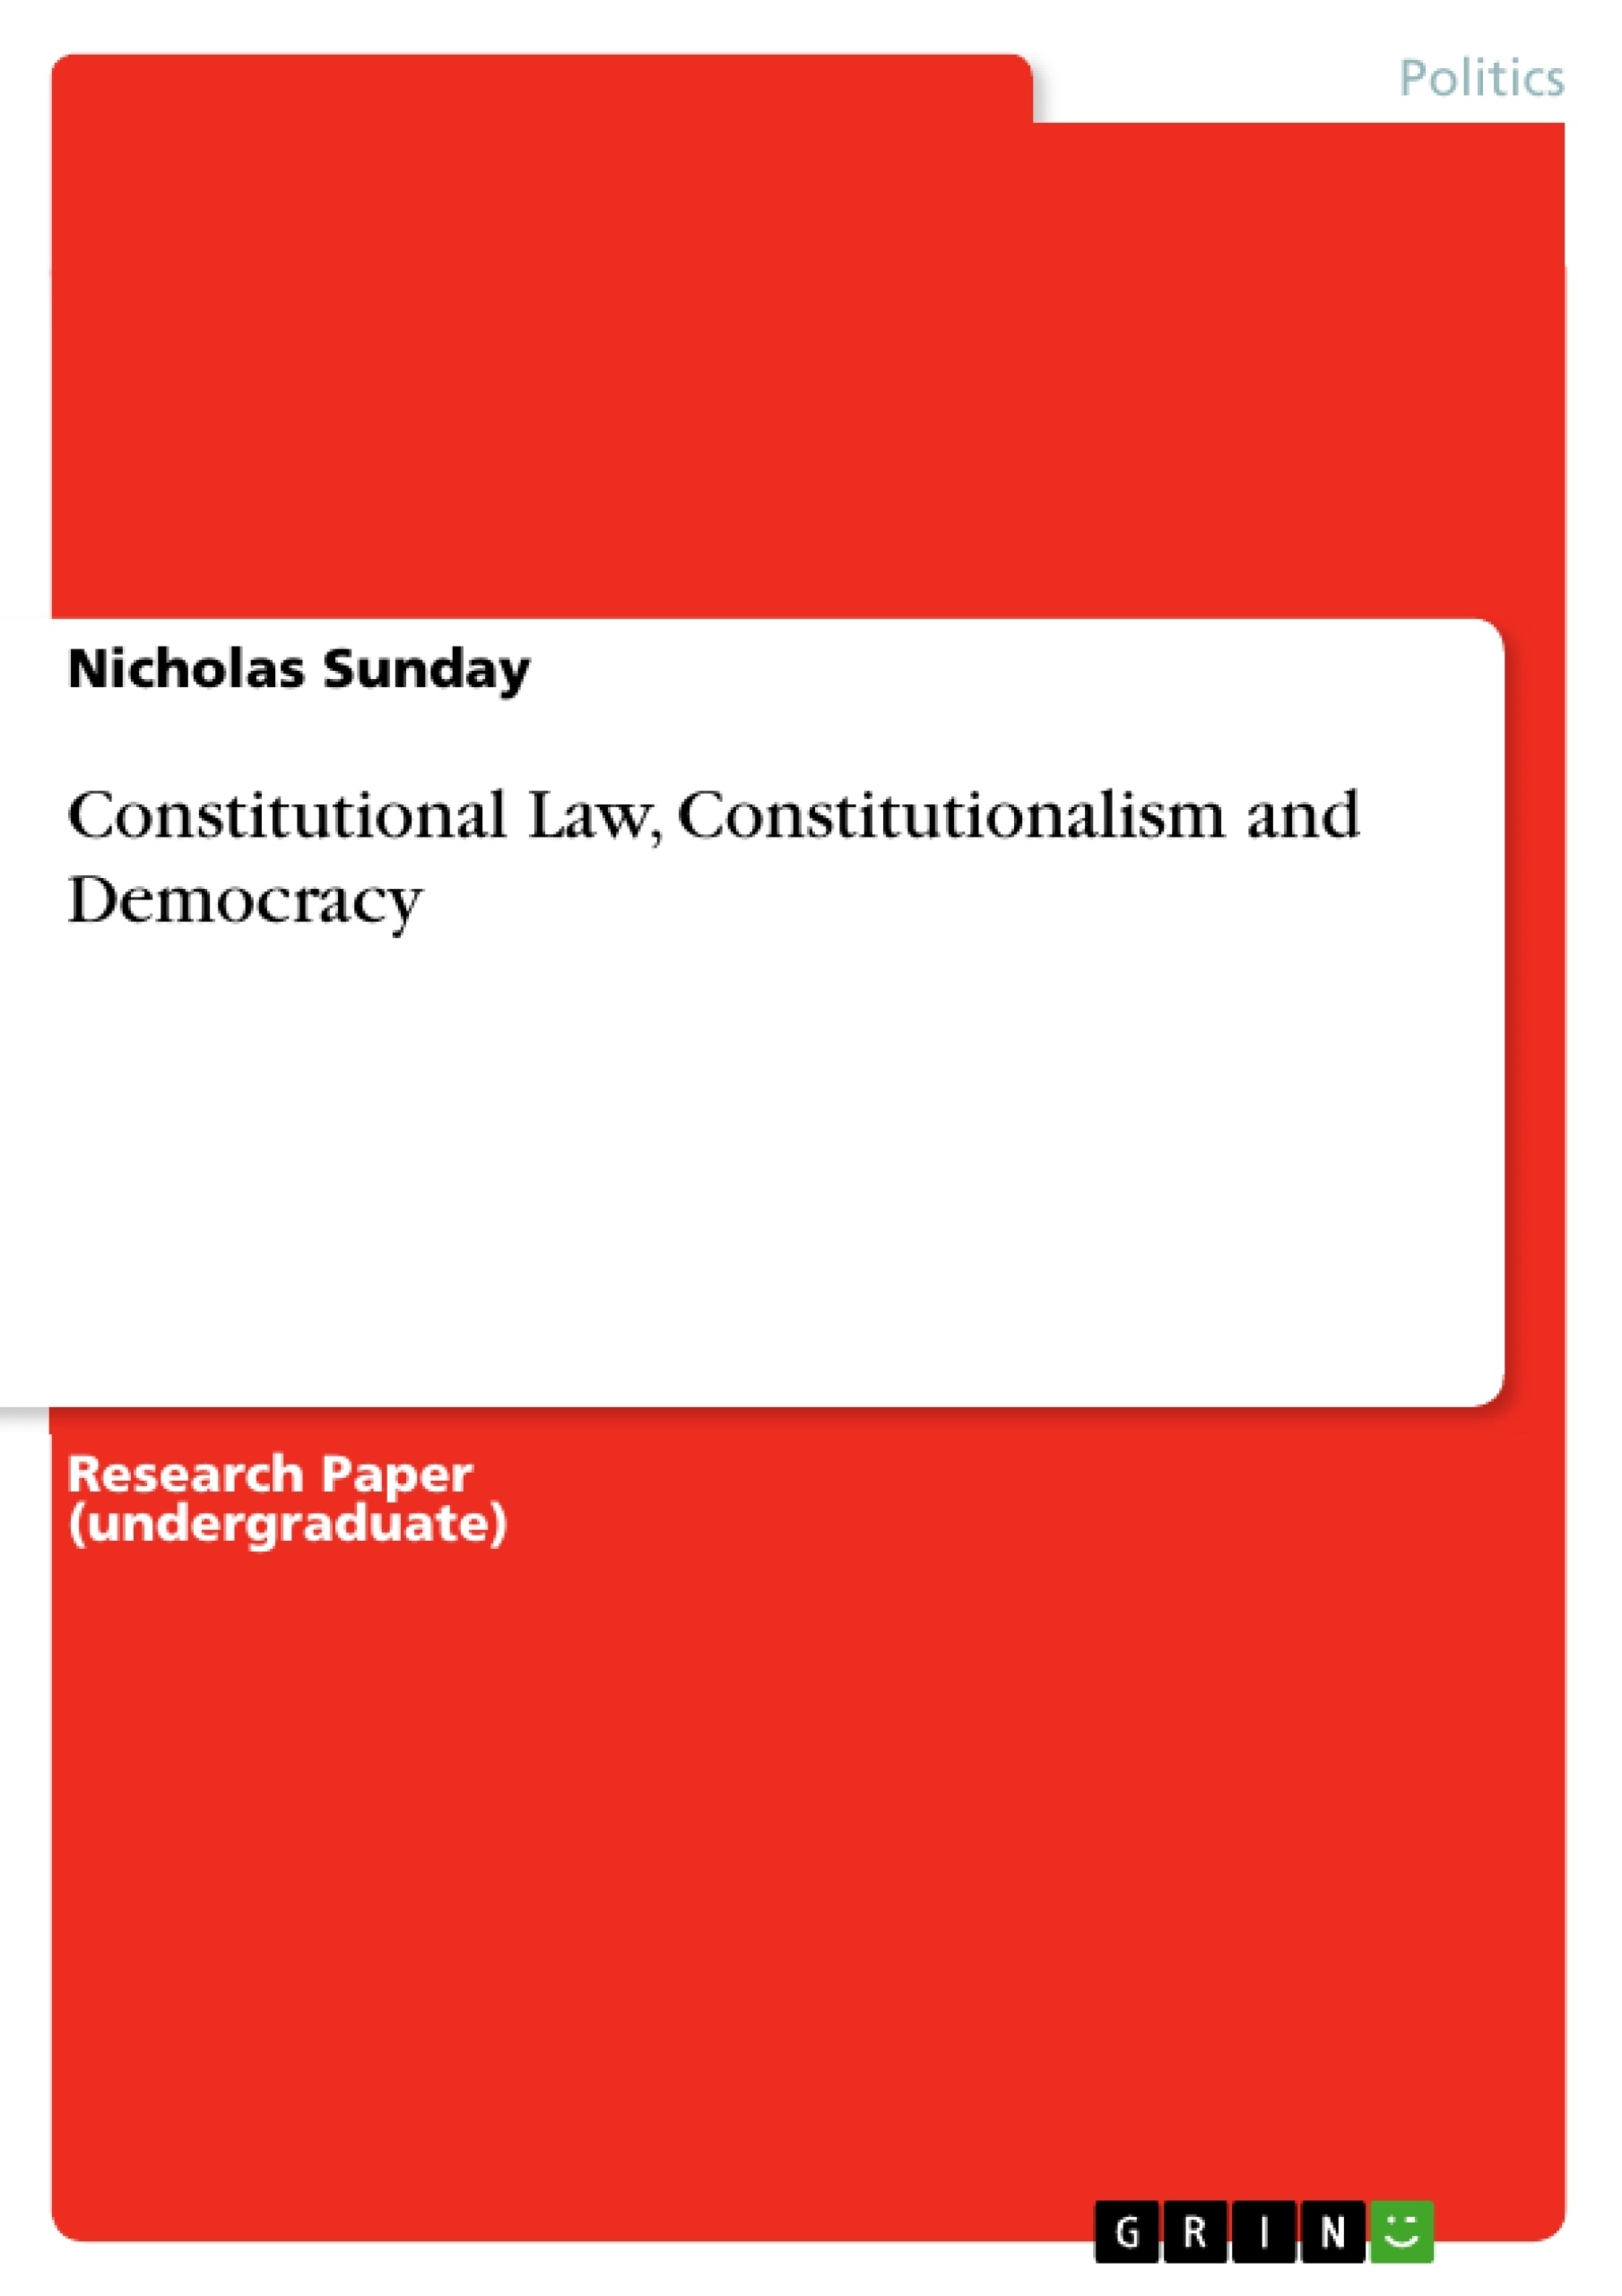 constitutional law essay topics